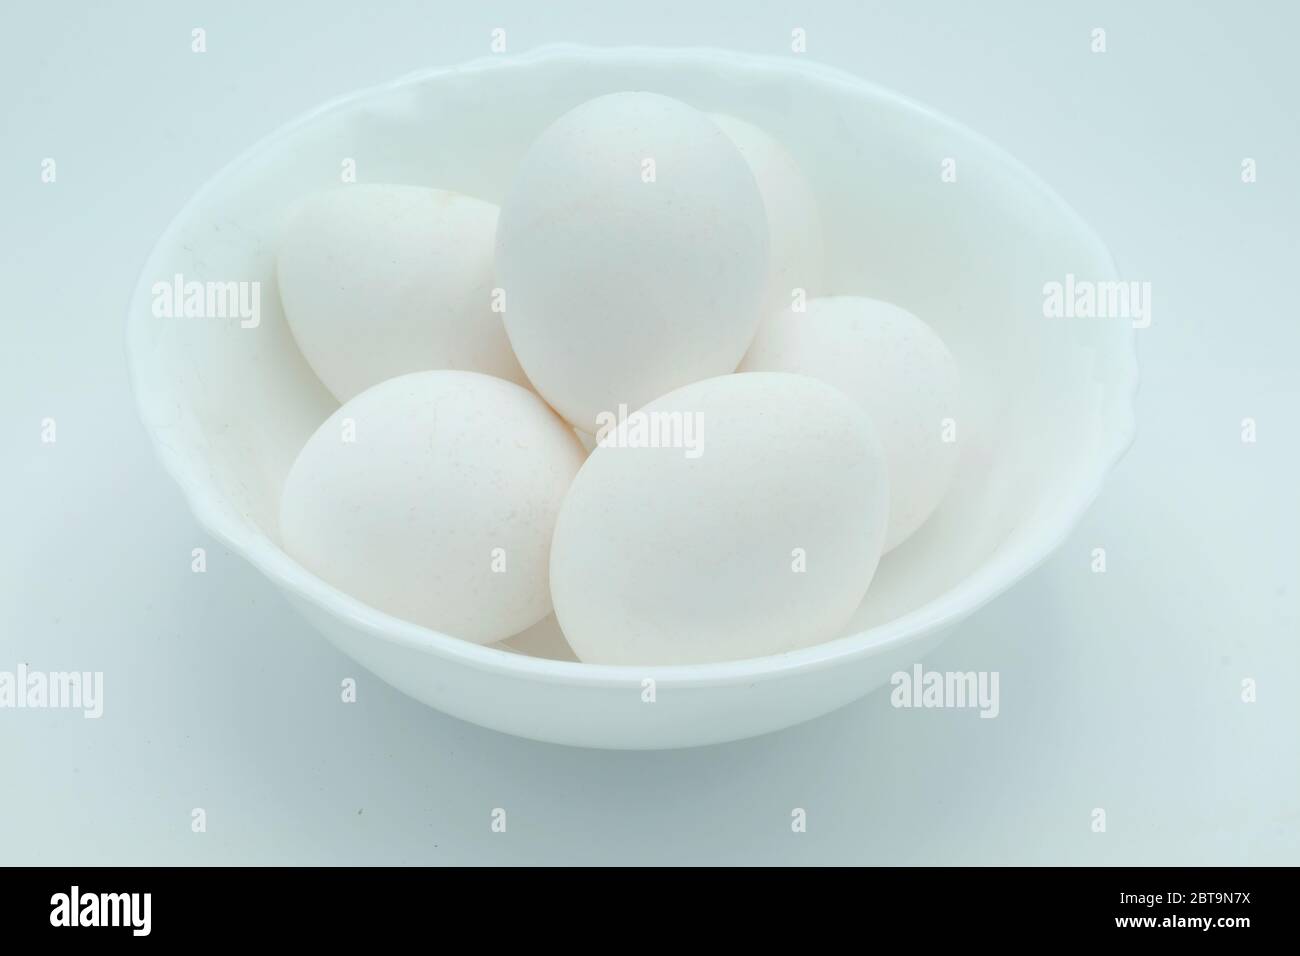 Un tazón blanco lleno de huevos blancos de gama libre sobre un fondo blanco Foto de stock